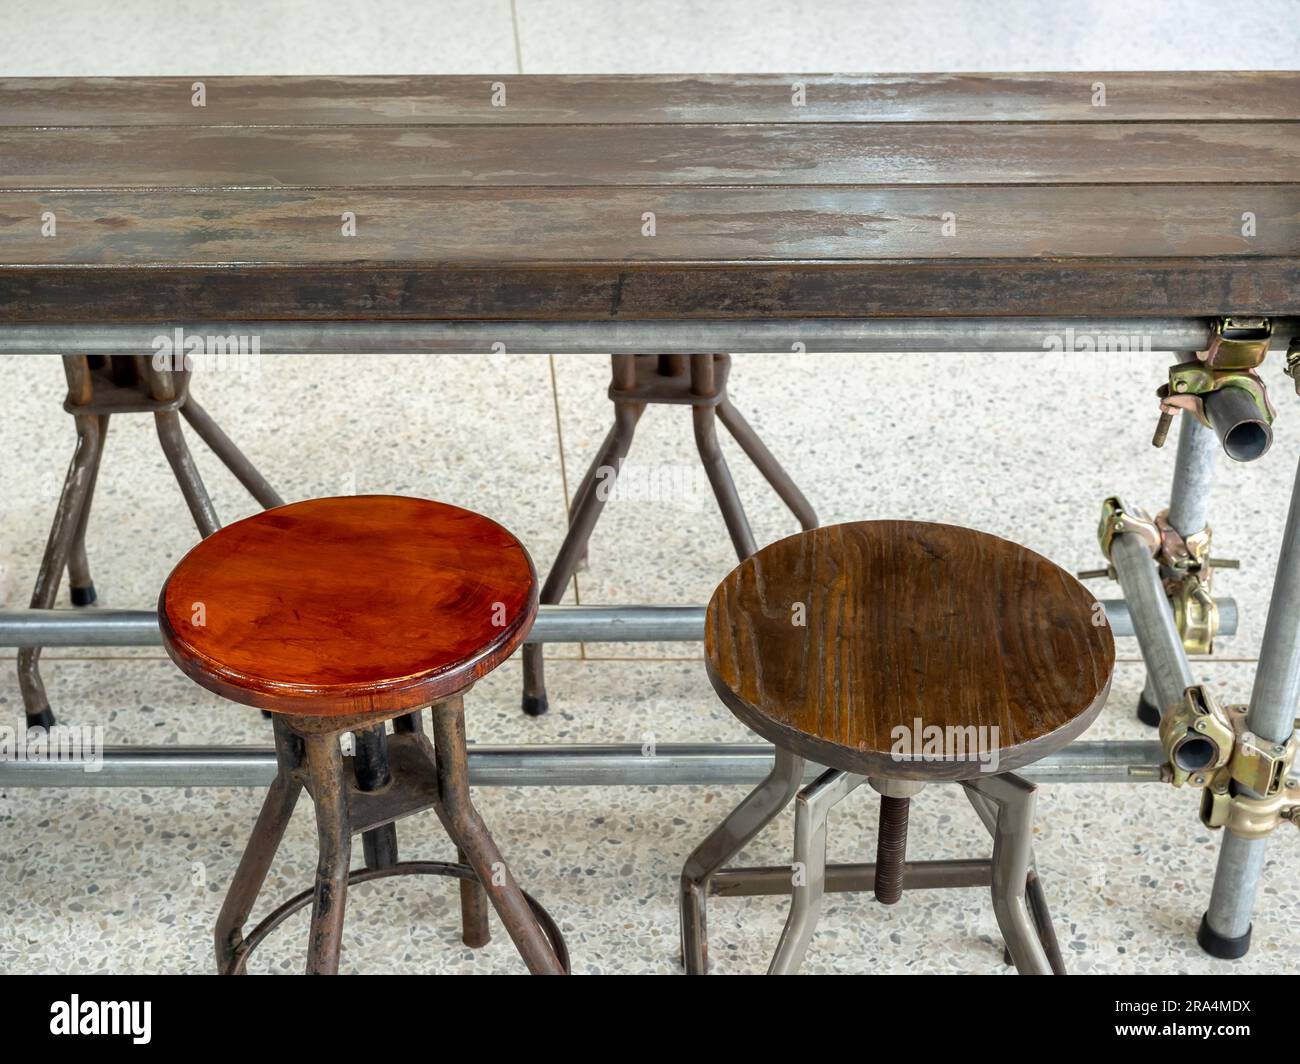 Due sedie rotonde d'epoca vuote sotto un tavolo in legno decorate su fondo pavimento in cemento, interni di un edificio in stile loft. Sedia girevole in legno, metà secolo f Foto Stock